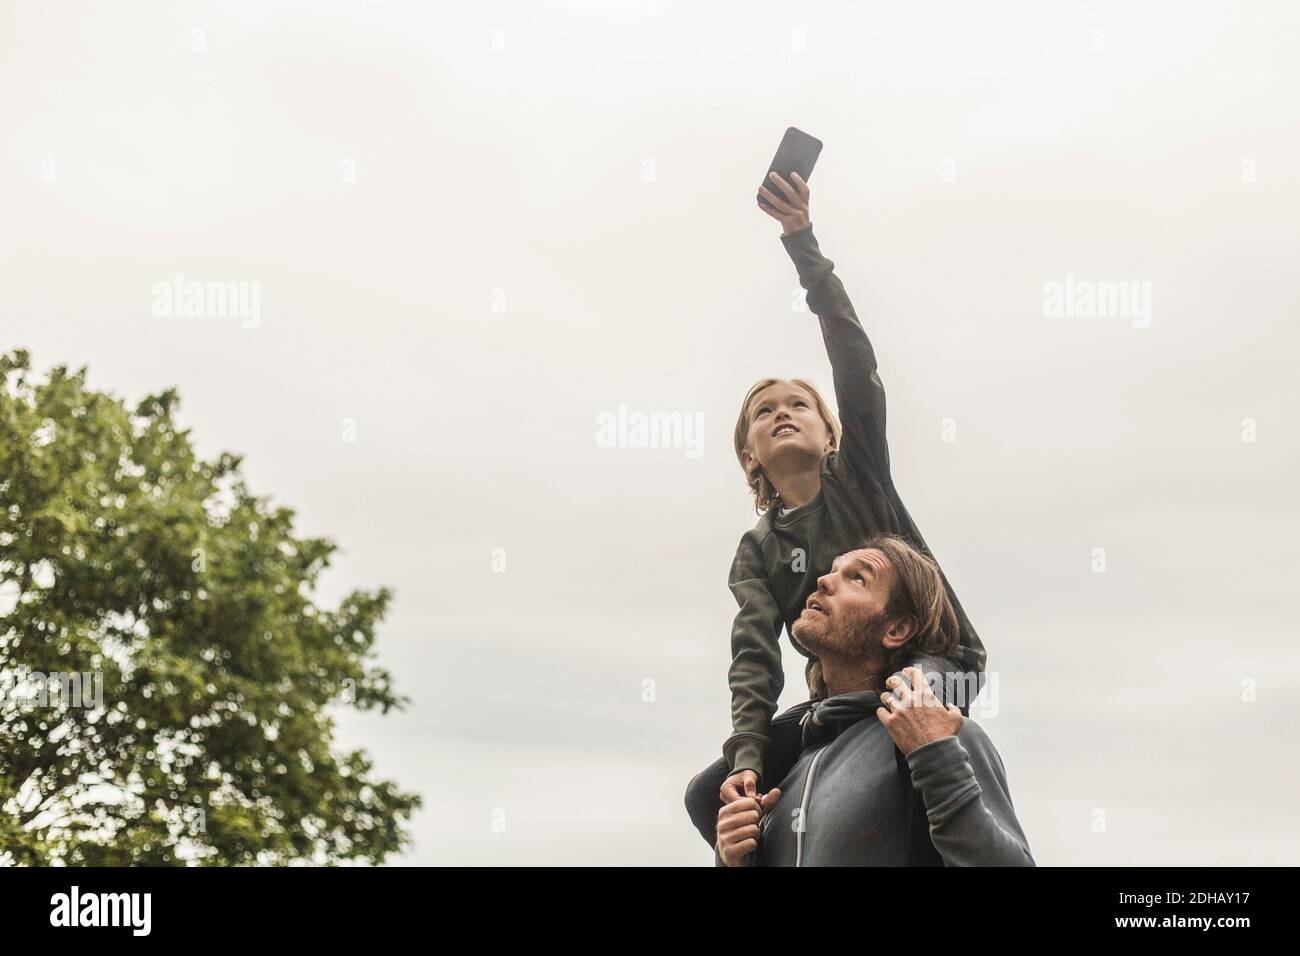 Tochter fotografiert durch Smartphone, während sie auf den Schultern des Vaters sitzt Gegen klaren Himmel Stockfoto